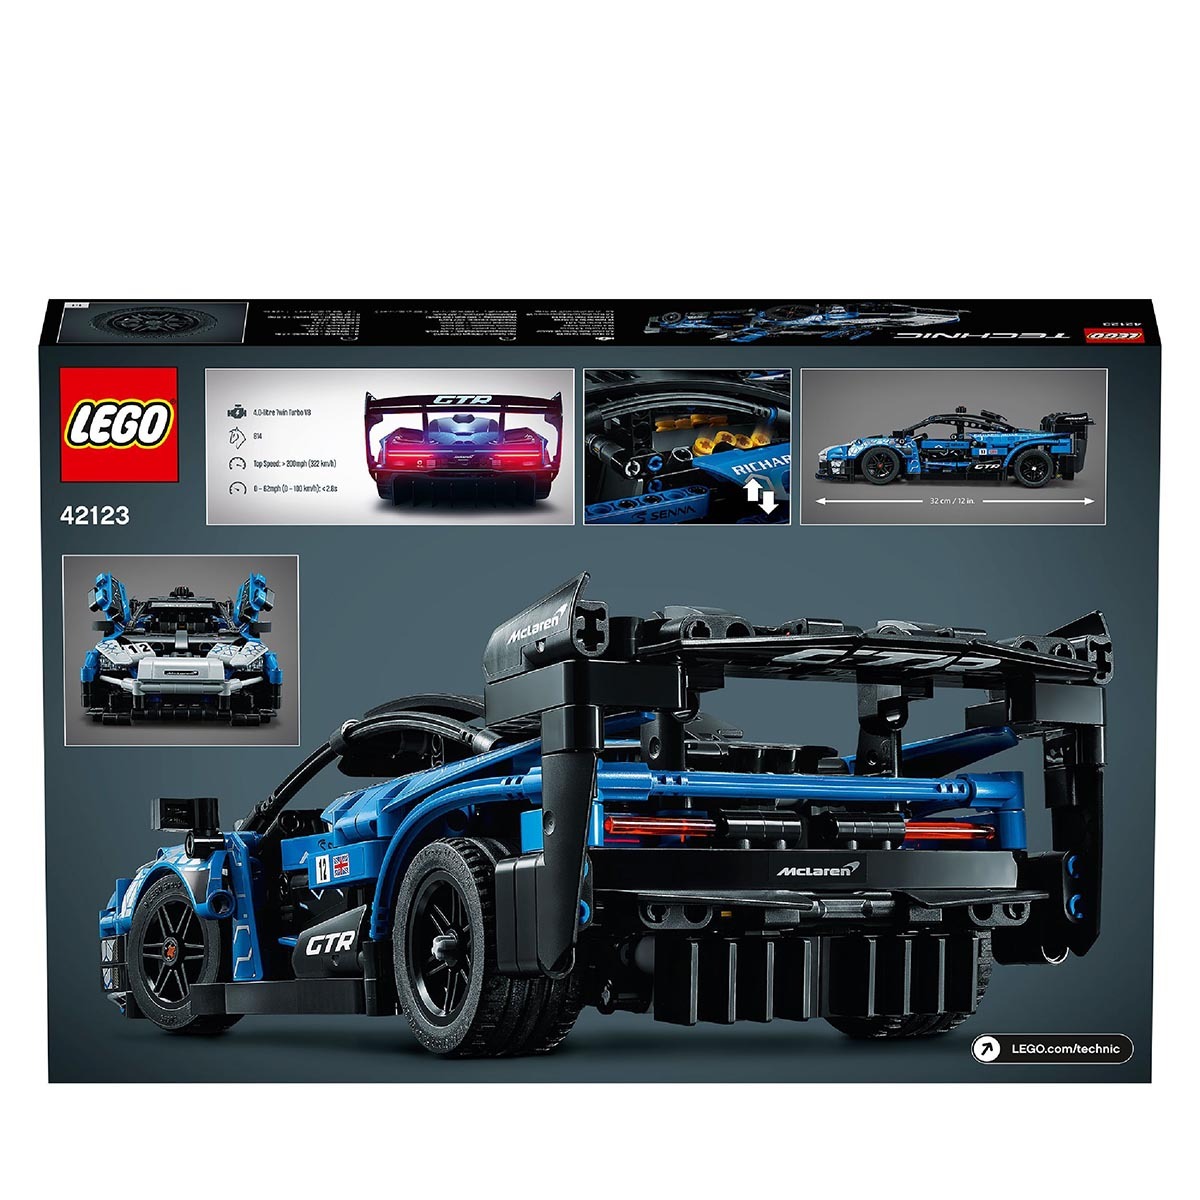 LEGO boxed image